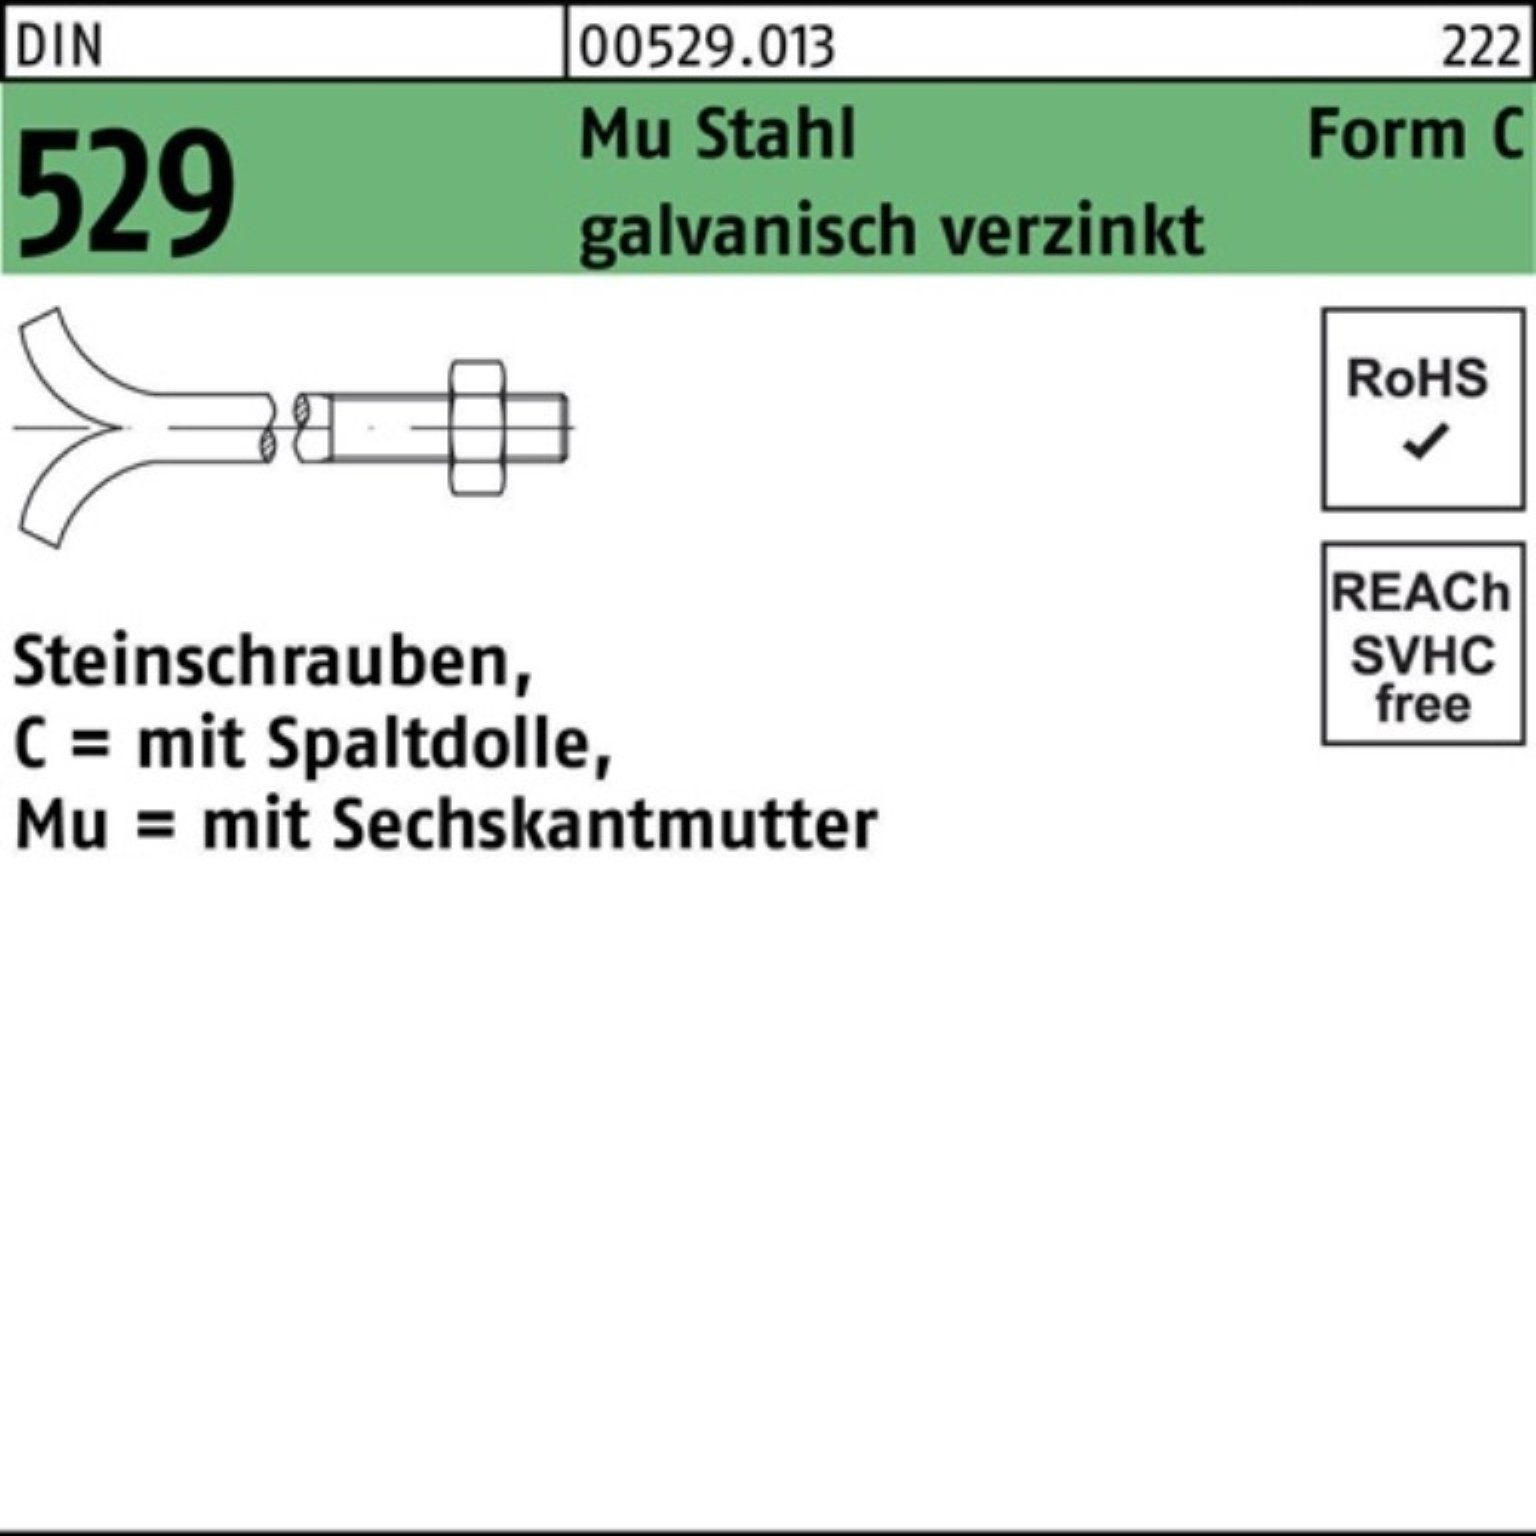 Reyher Schraube 100er Pack Steinschraube Spaltdolle/6-ktmutter CM DIN 3. 16x400 Mu 529